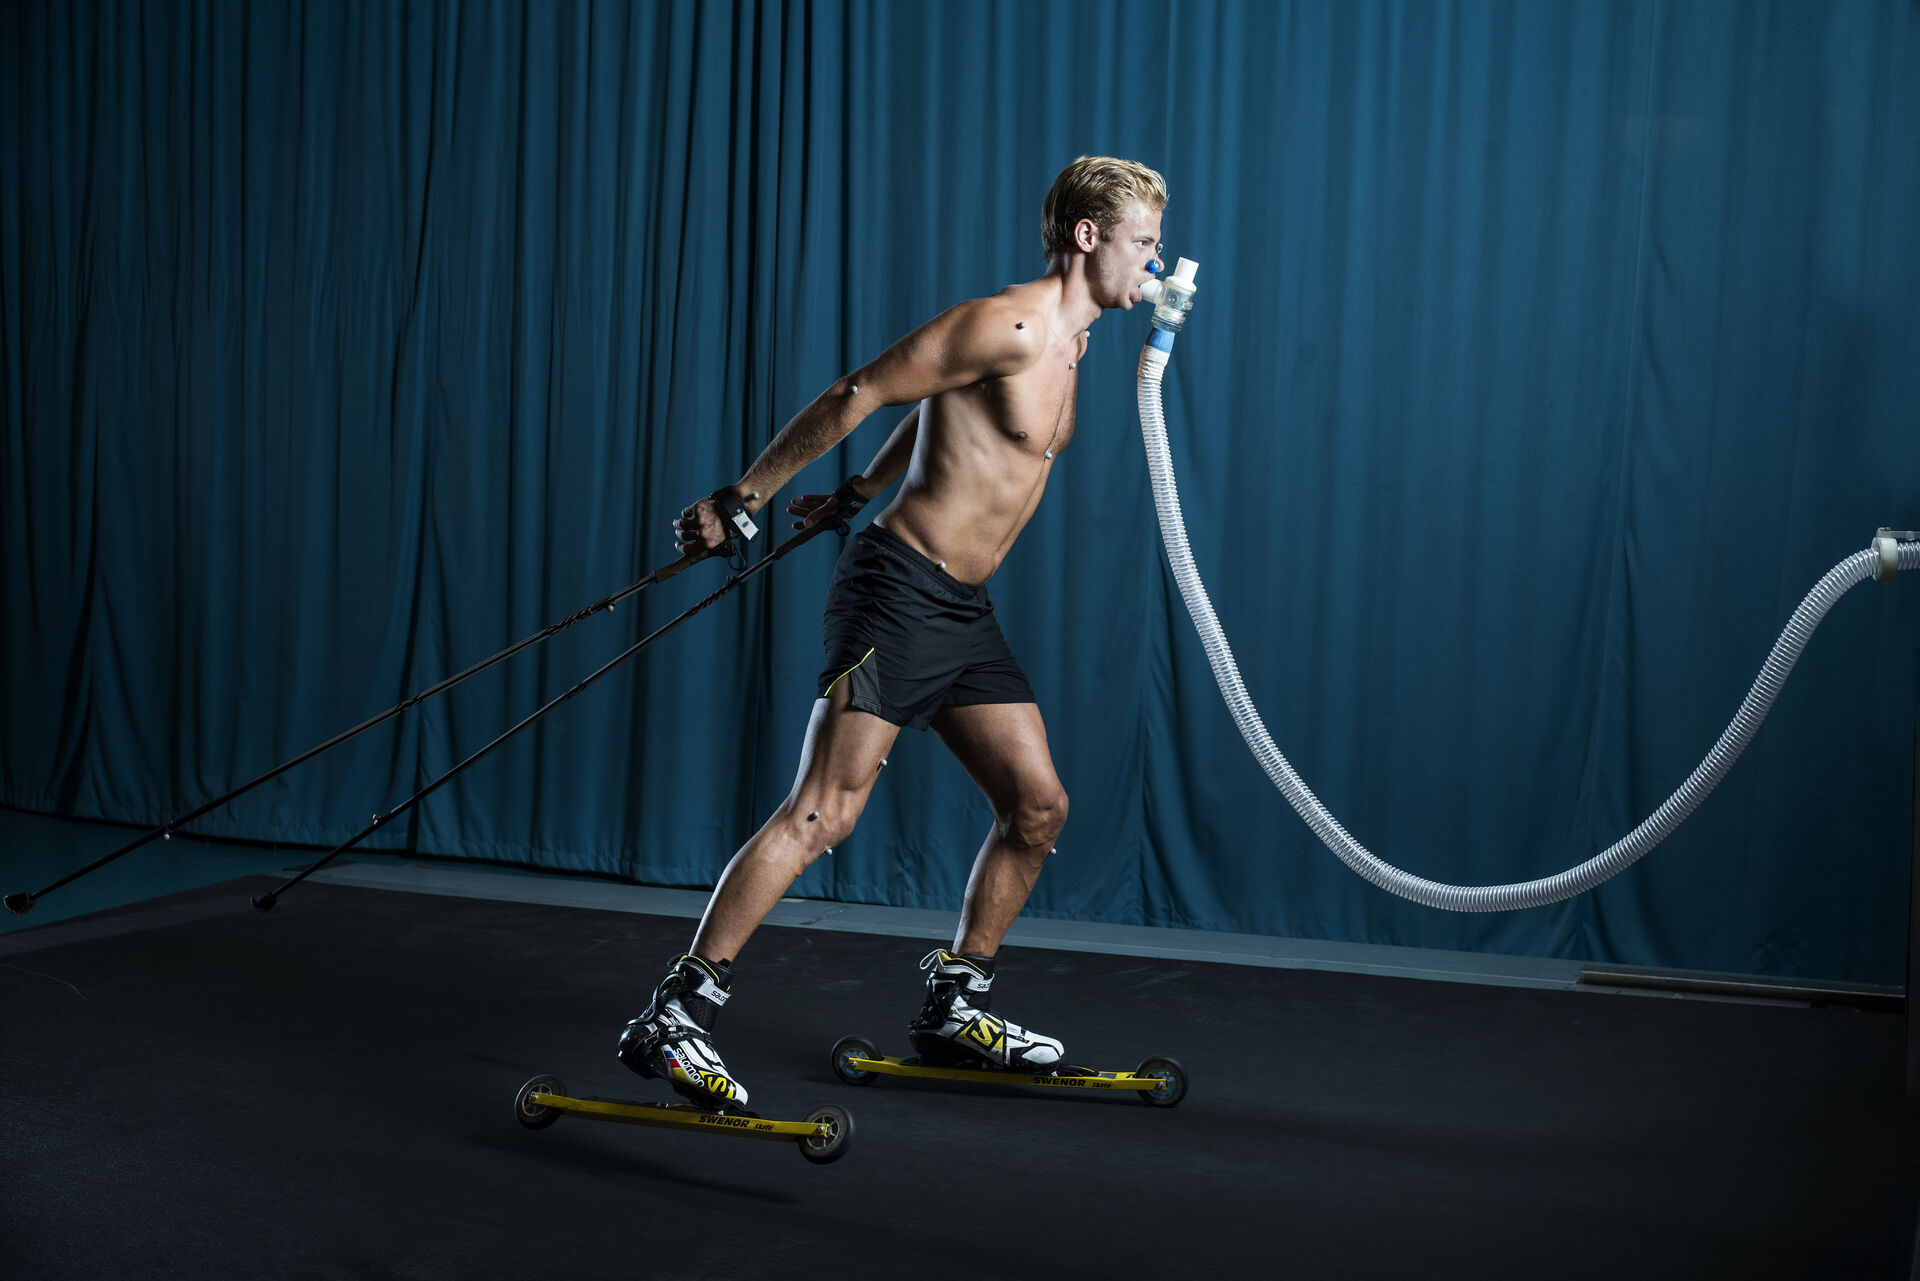 Man rollerskiing on treadmill